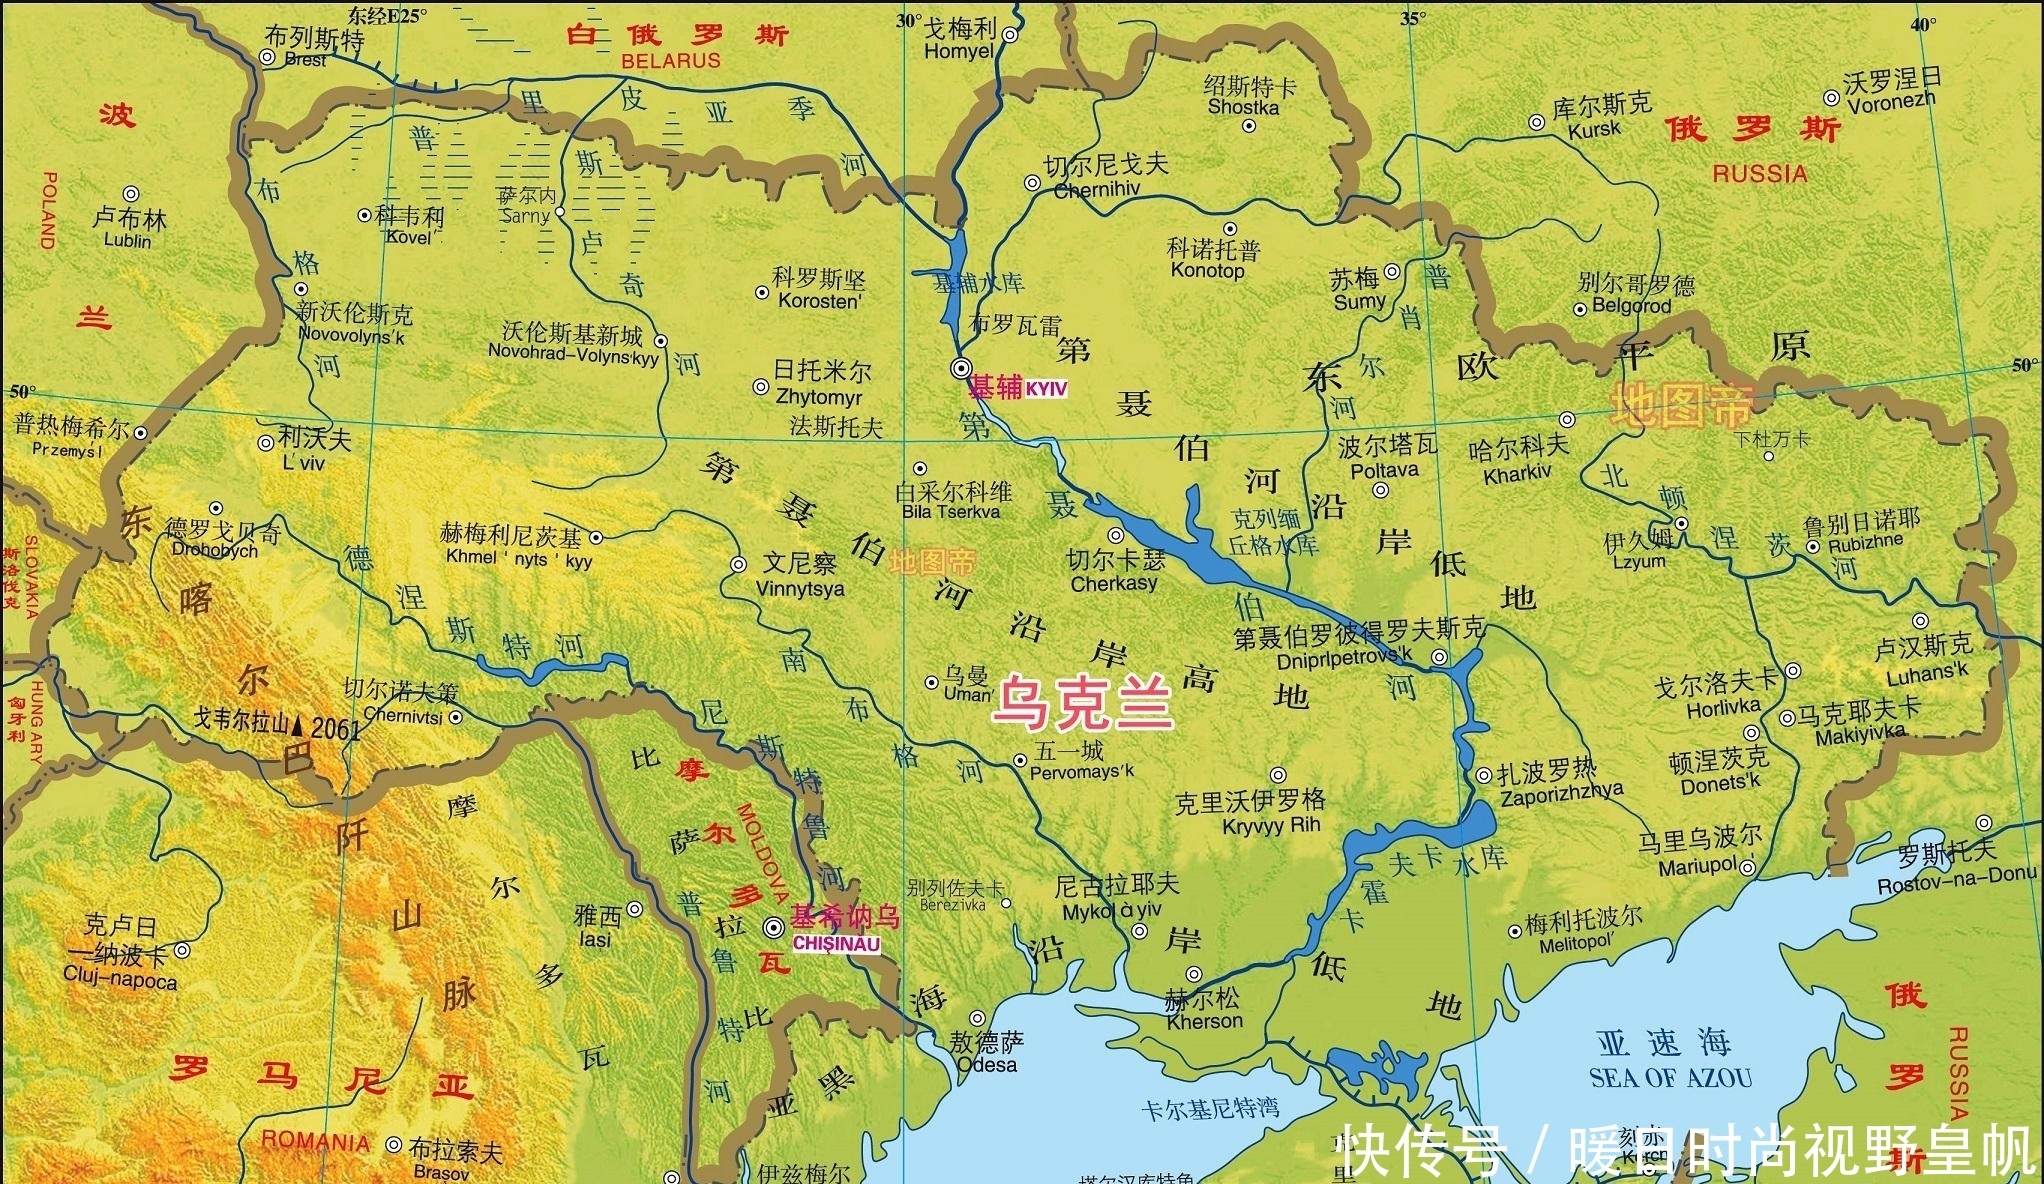 第聂伯河对乌克兰意味着什么?